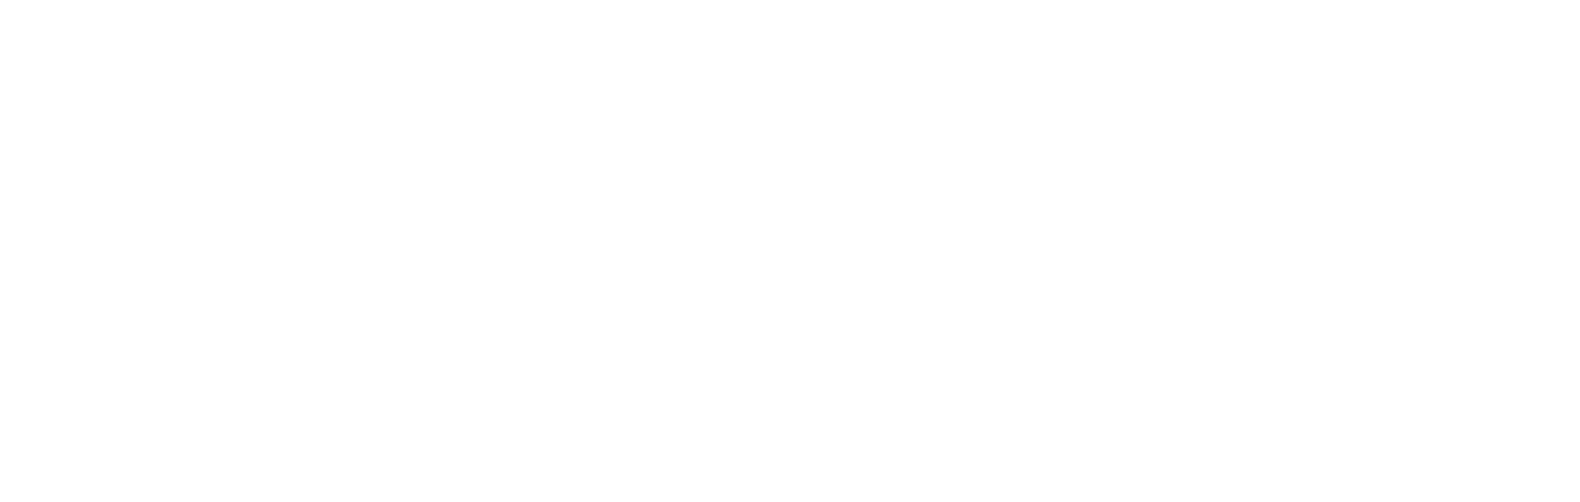 Paragon 28 logo grand pour les fonds sombres (PNG transparent)